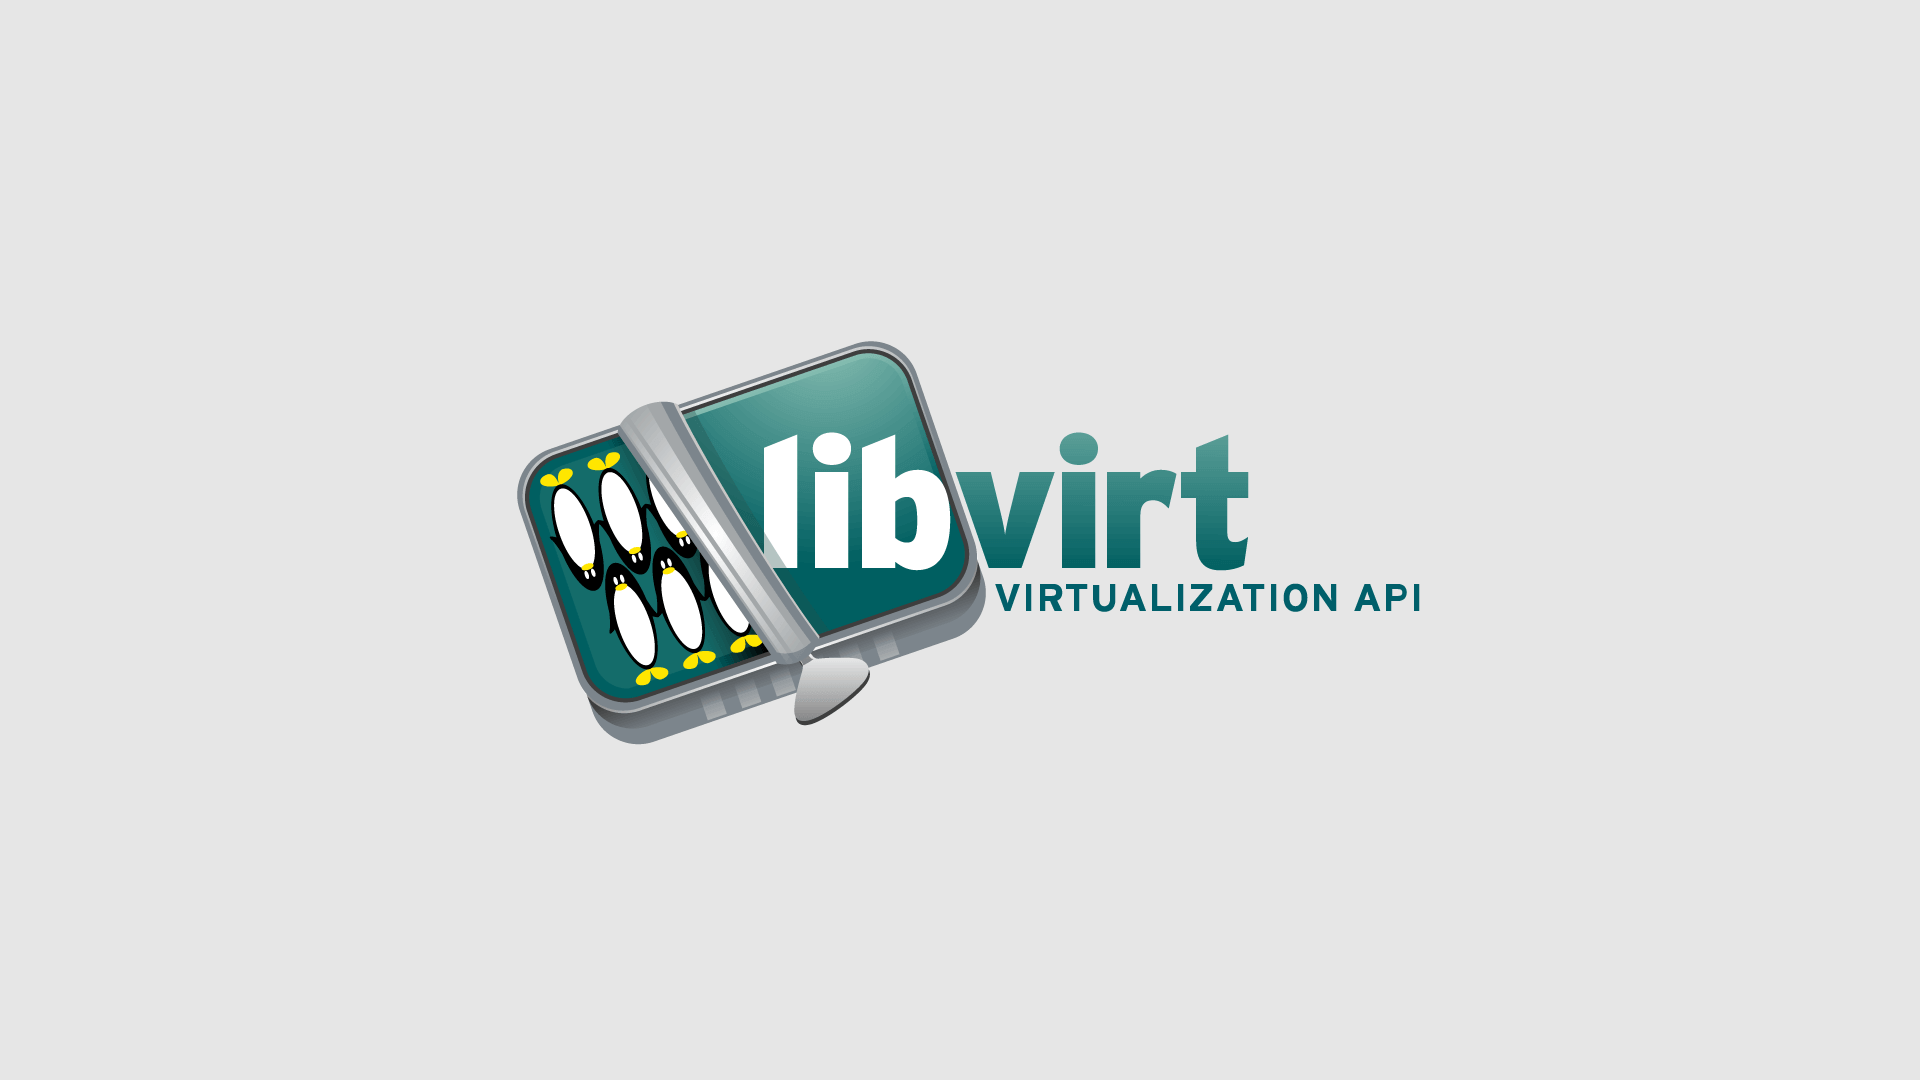 yüksek çözünürlüklü libvirt virtualization api logosu